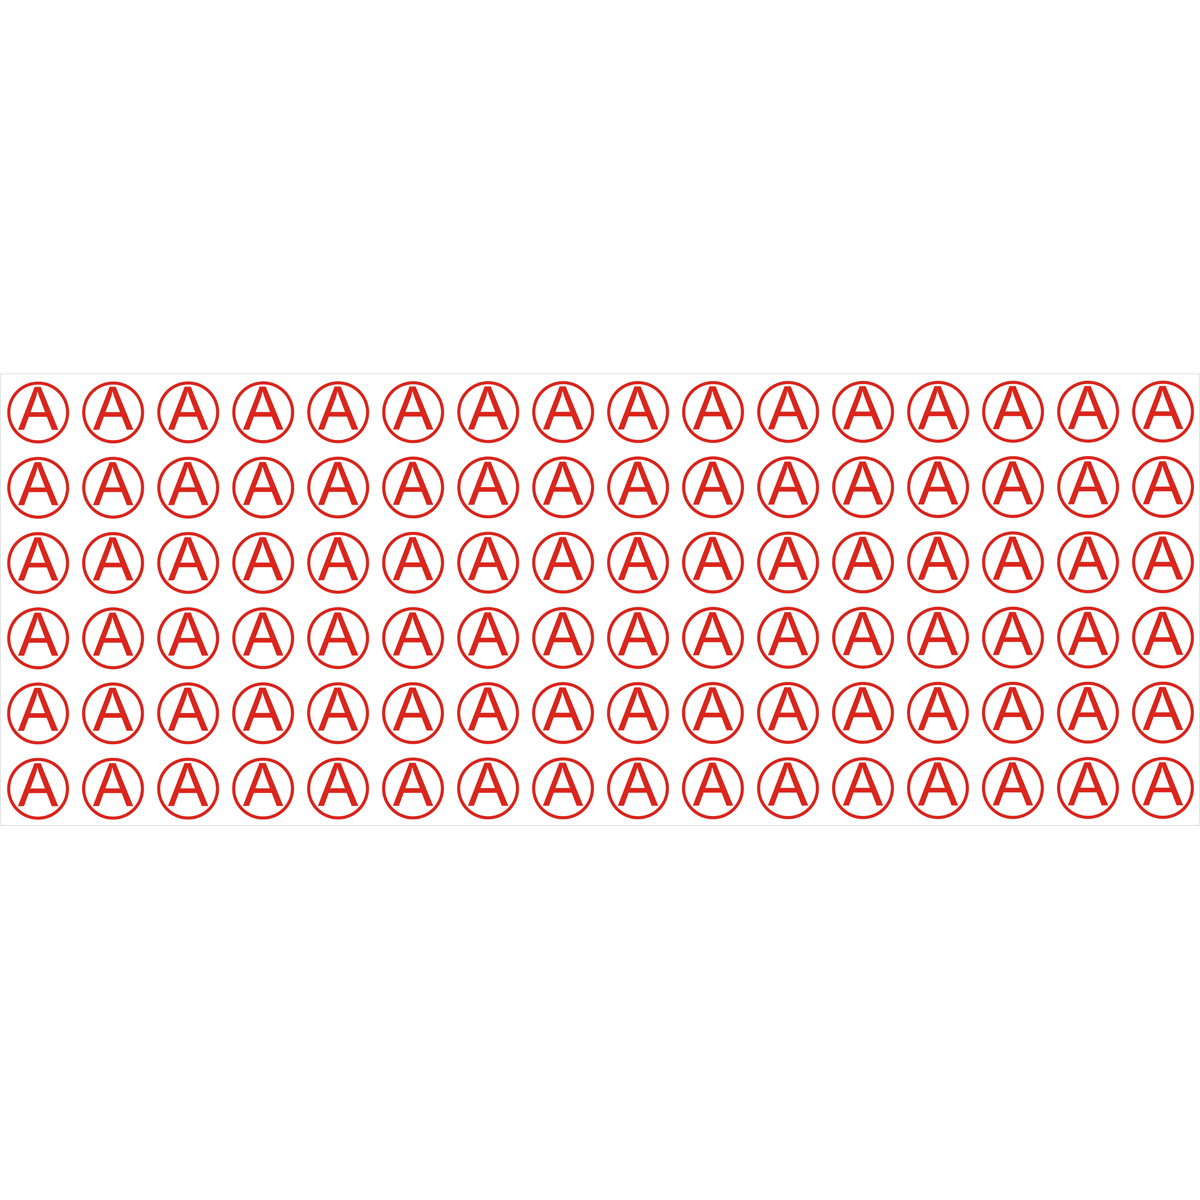 Знак "А" для идентификации аварийных светильников (Пленка 40 х 40) - комплект из 96 штук